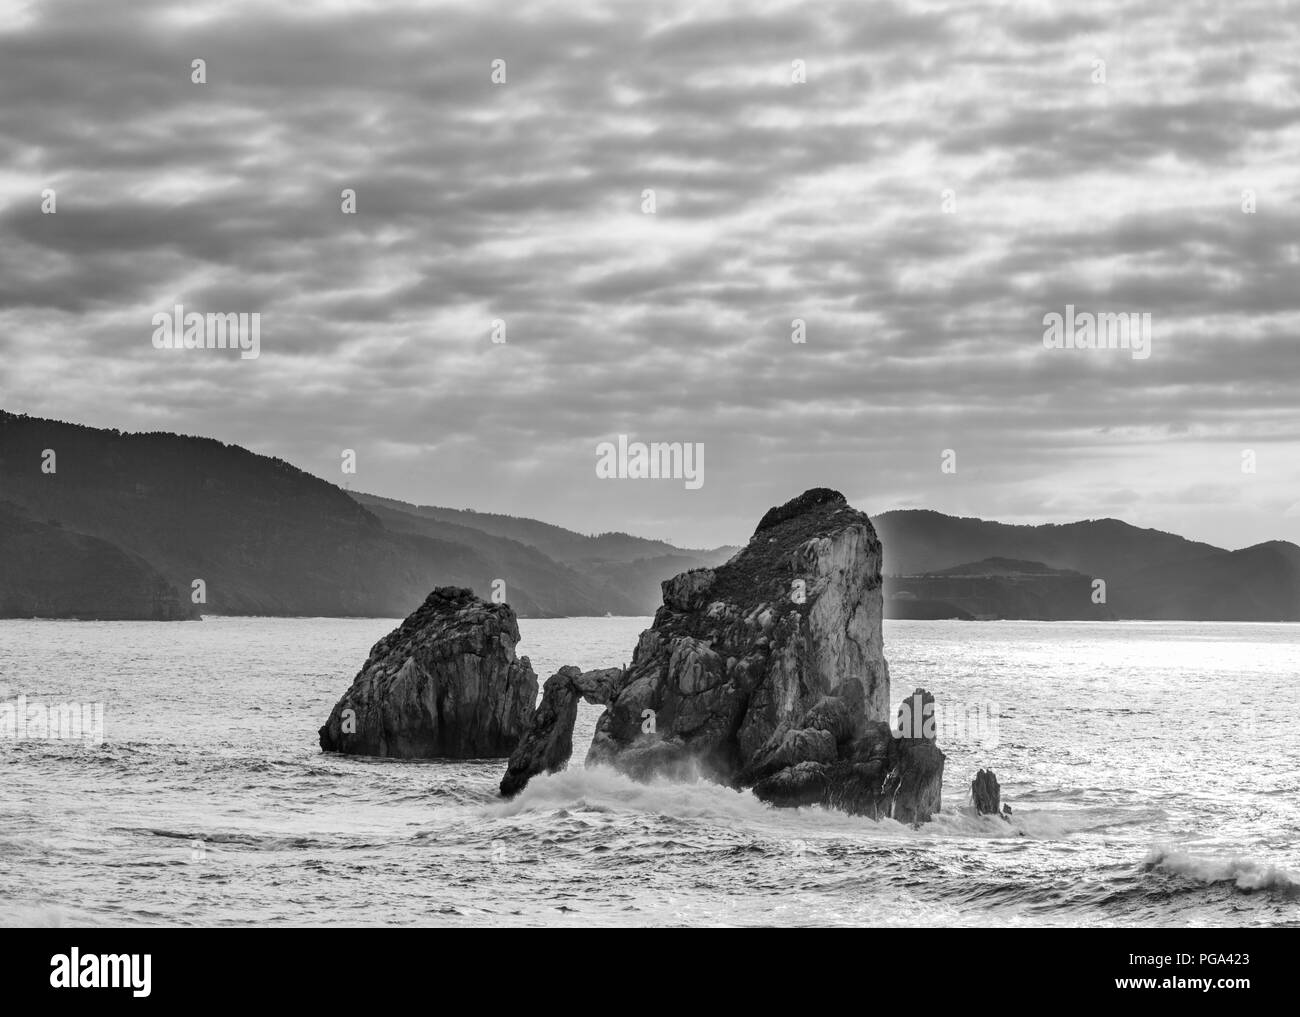 Beaux rochers dans la mer vue de Gaztelugatxe, Bilbao dans le Nord de l'Espagne Banque D'Images